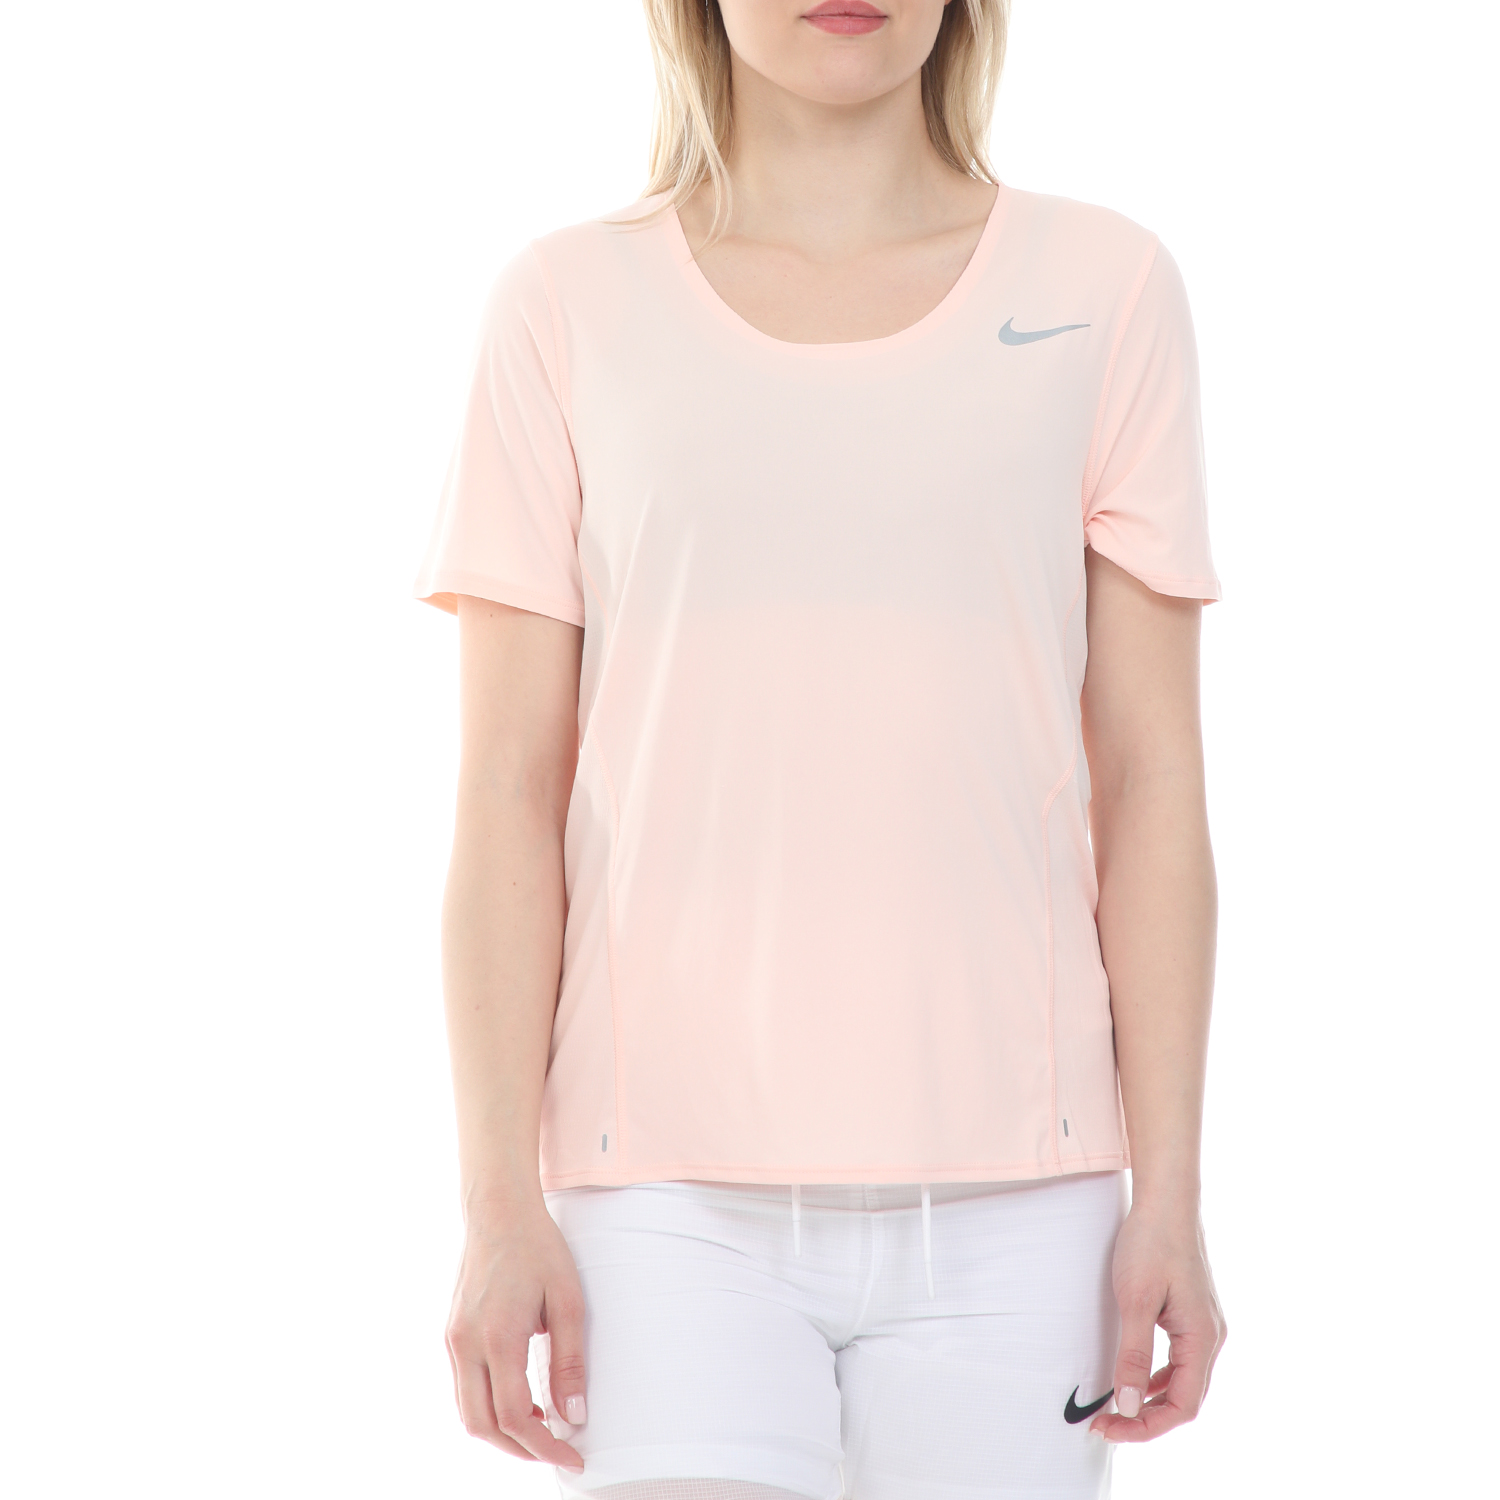 Γυναικεία/Ρούχα/Αθλητικά/T-shirt-Τοπ NIKE - Γυναικείο t-shirt NIKE CITY SLEEK TOP SS ροζ